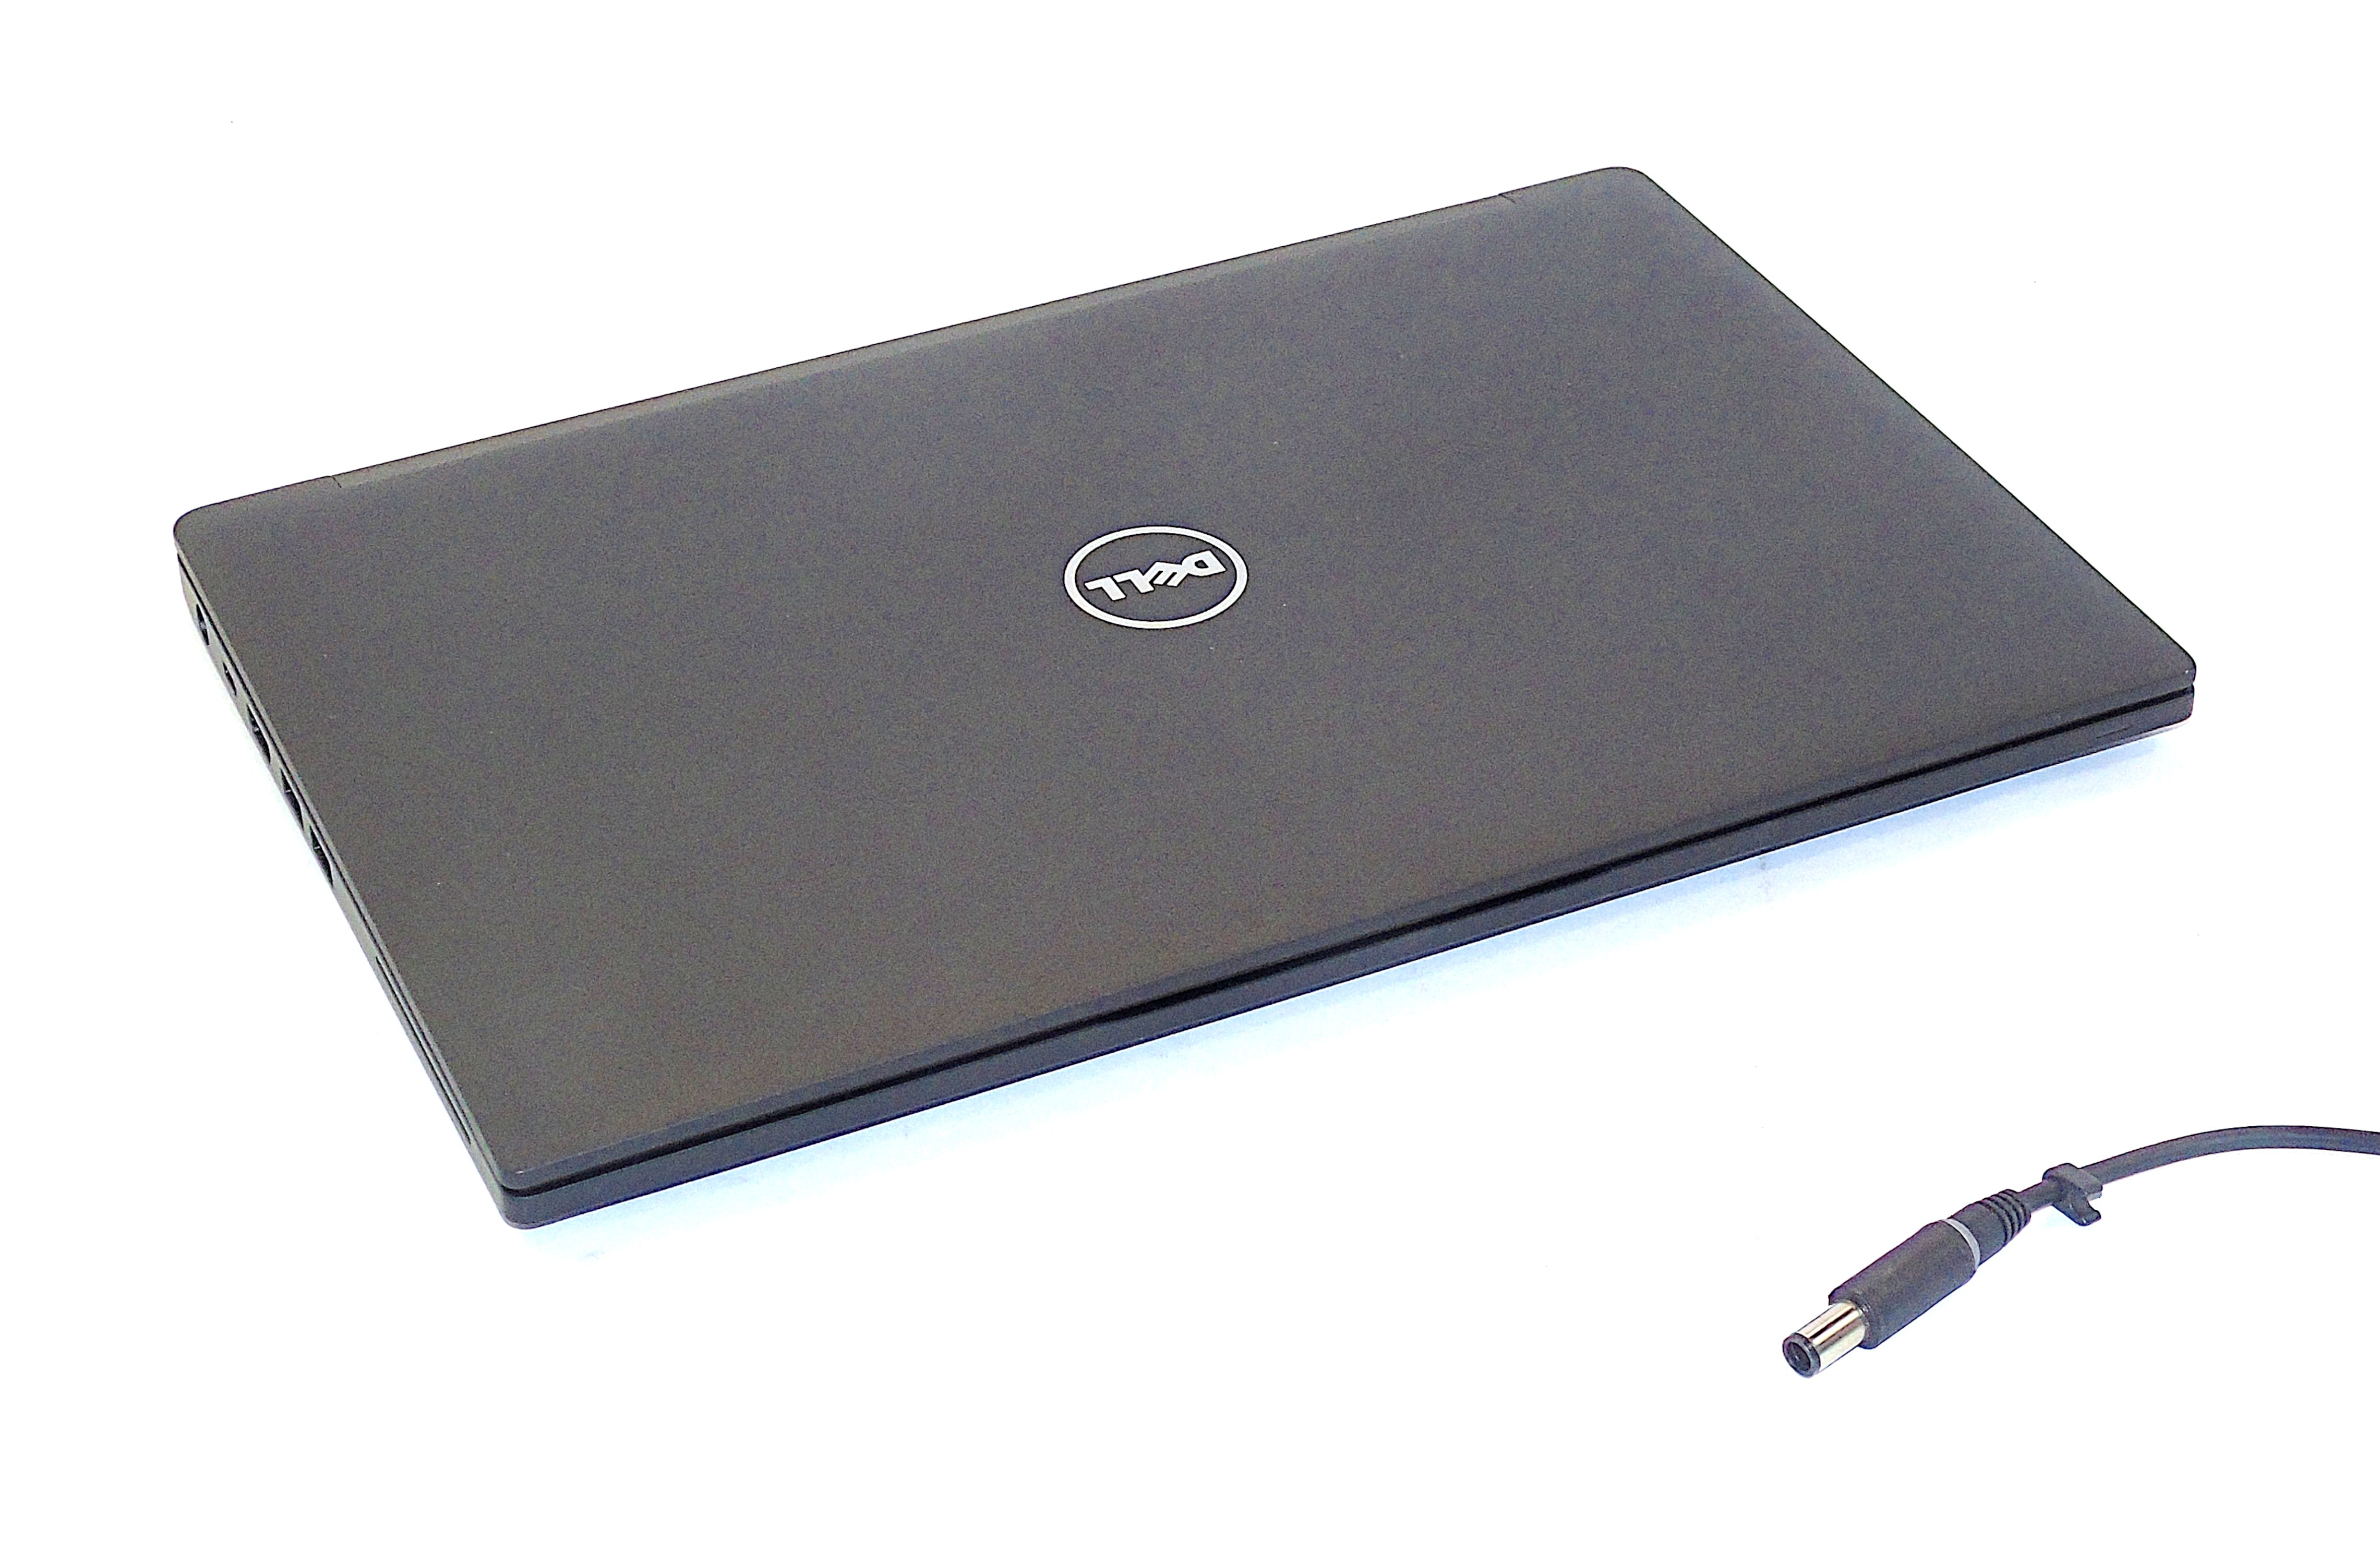 Dell Latitude 7480 Laptop, 14" Core i5 6th Gen, 8GB RAM, 256GB SSD